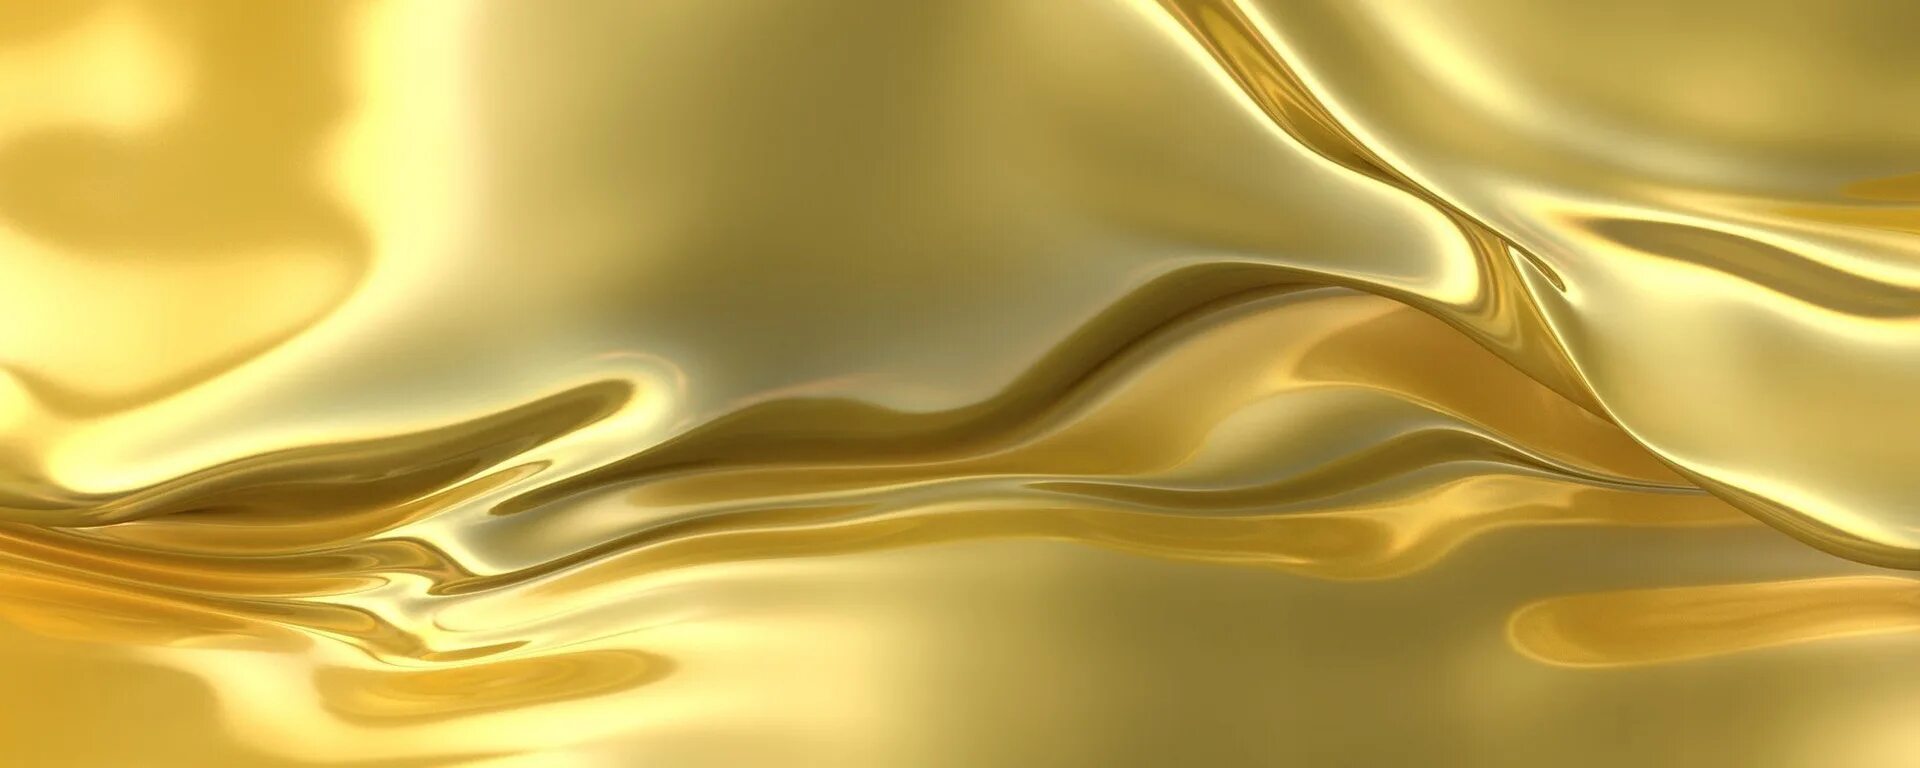 Золото металлик lx19240. Золотистый фон. Золото текстура. Темное золото цвет. Красивый фон золото